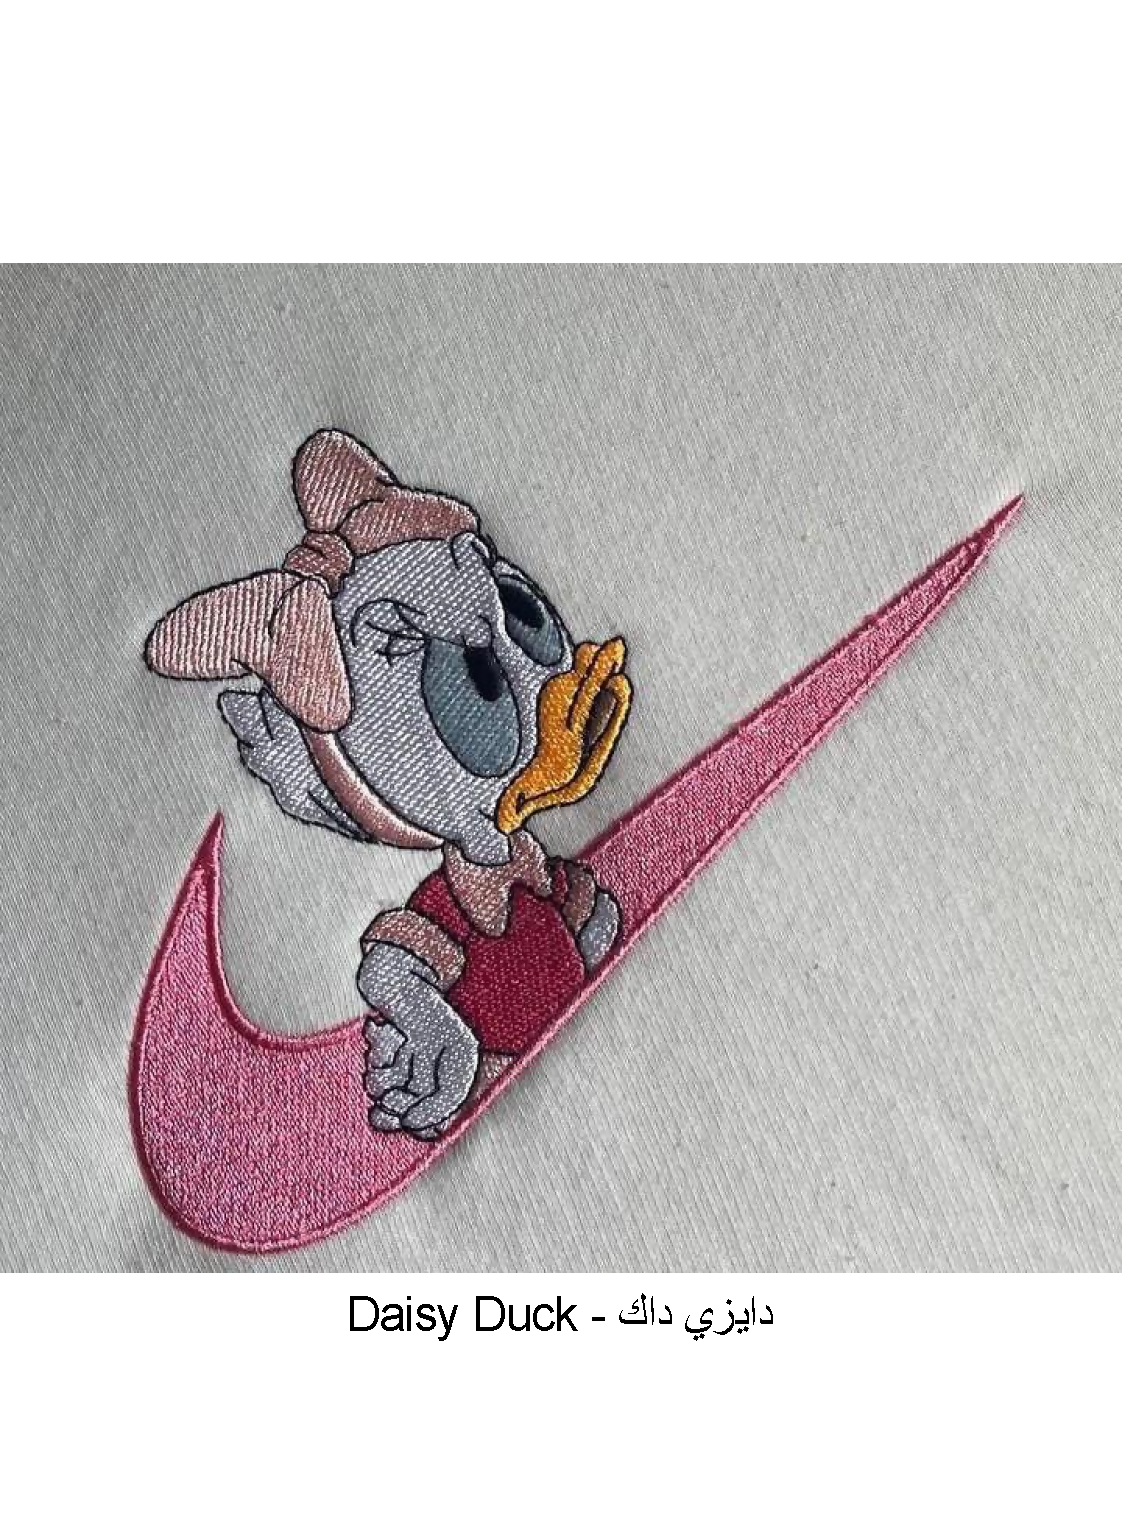 Daisy Duck Copy